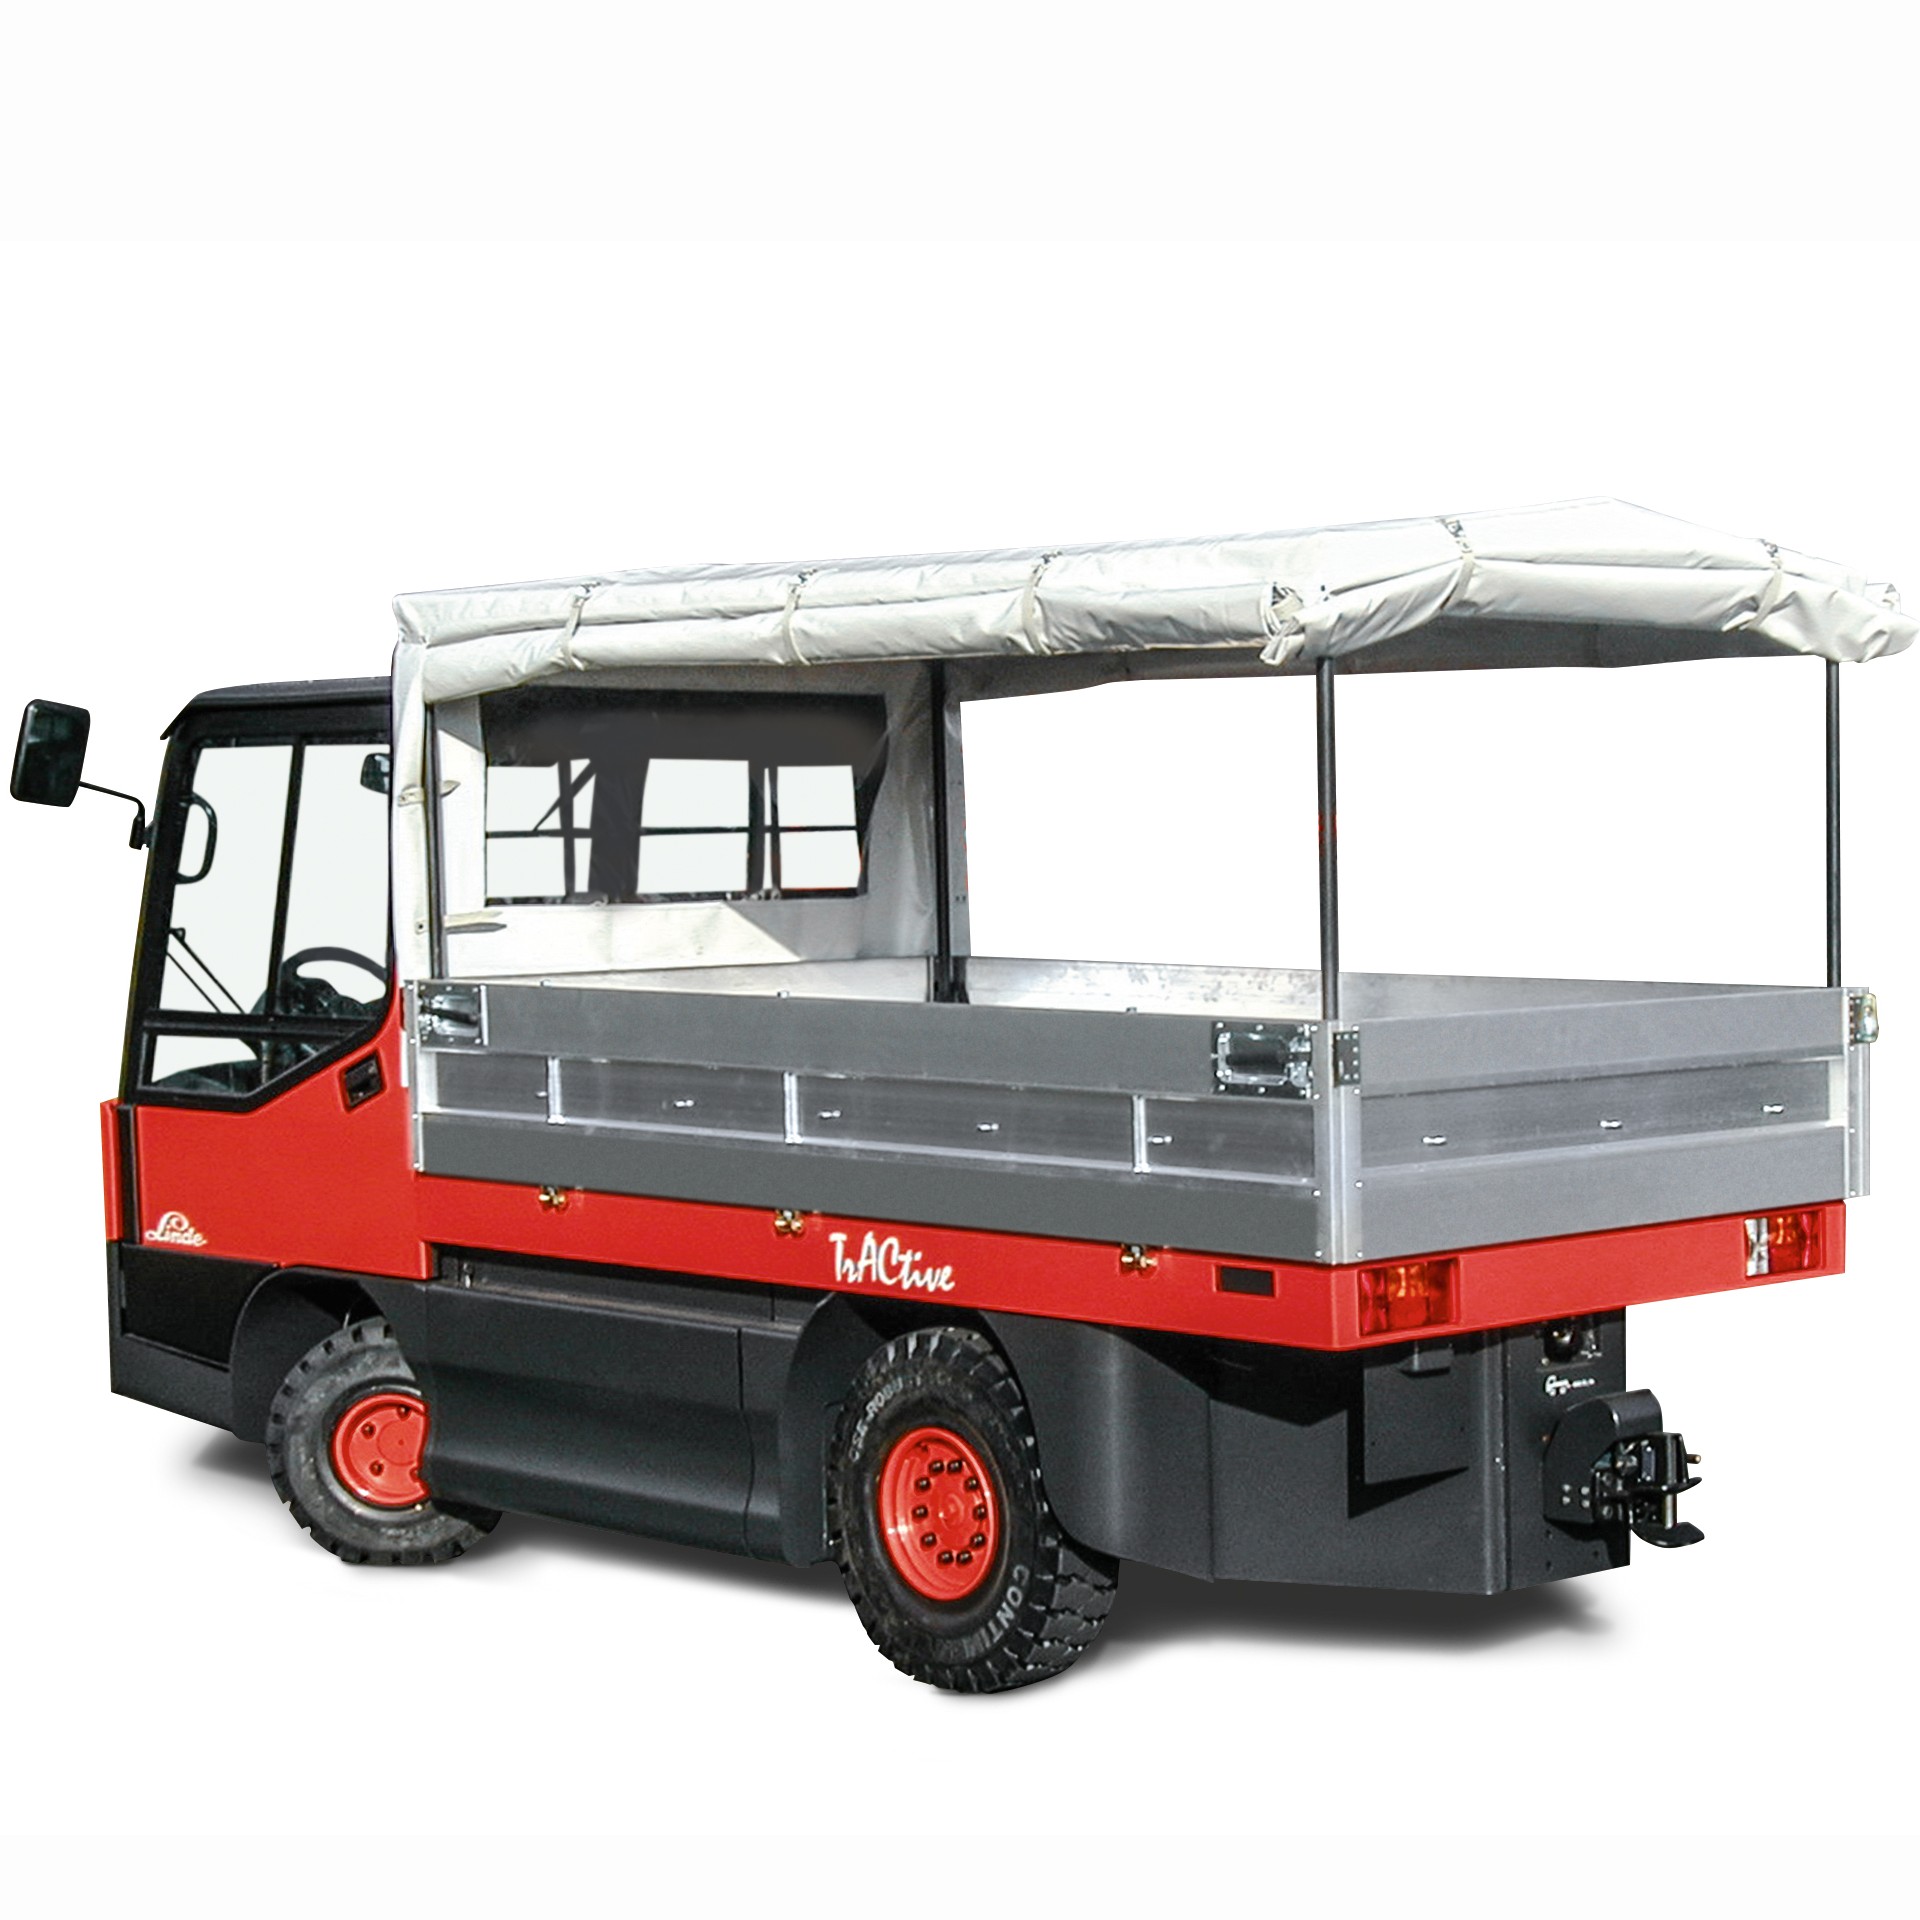 Linde W20 platformwagen met optionele opbouw en opvouwbaar doek